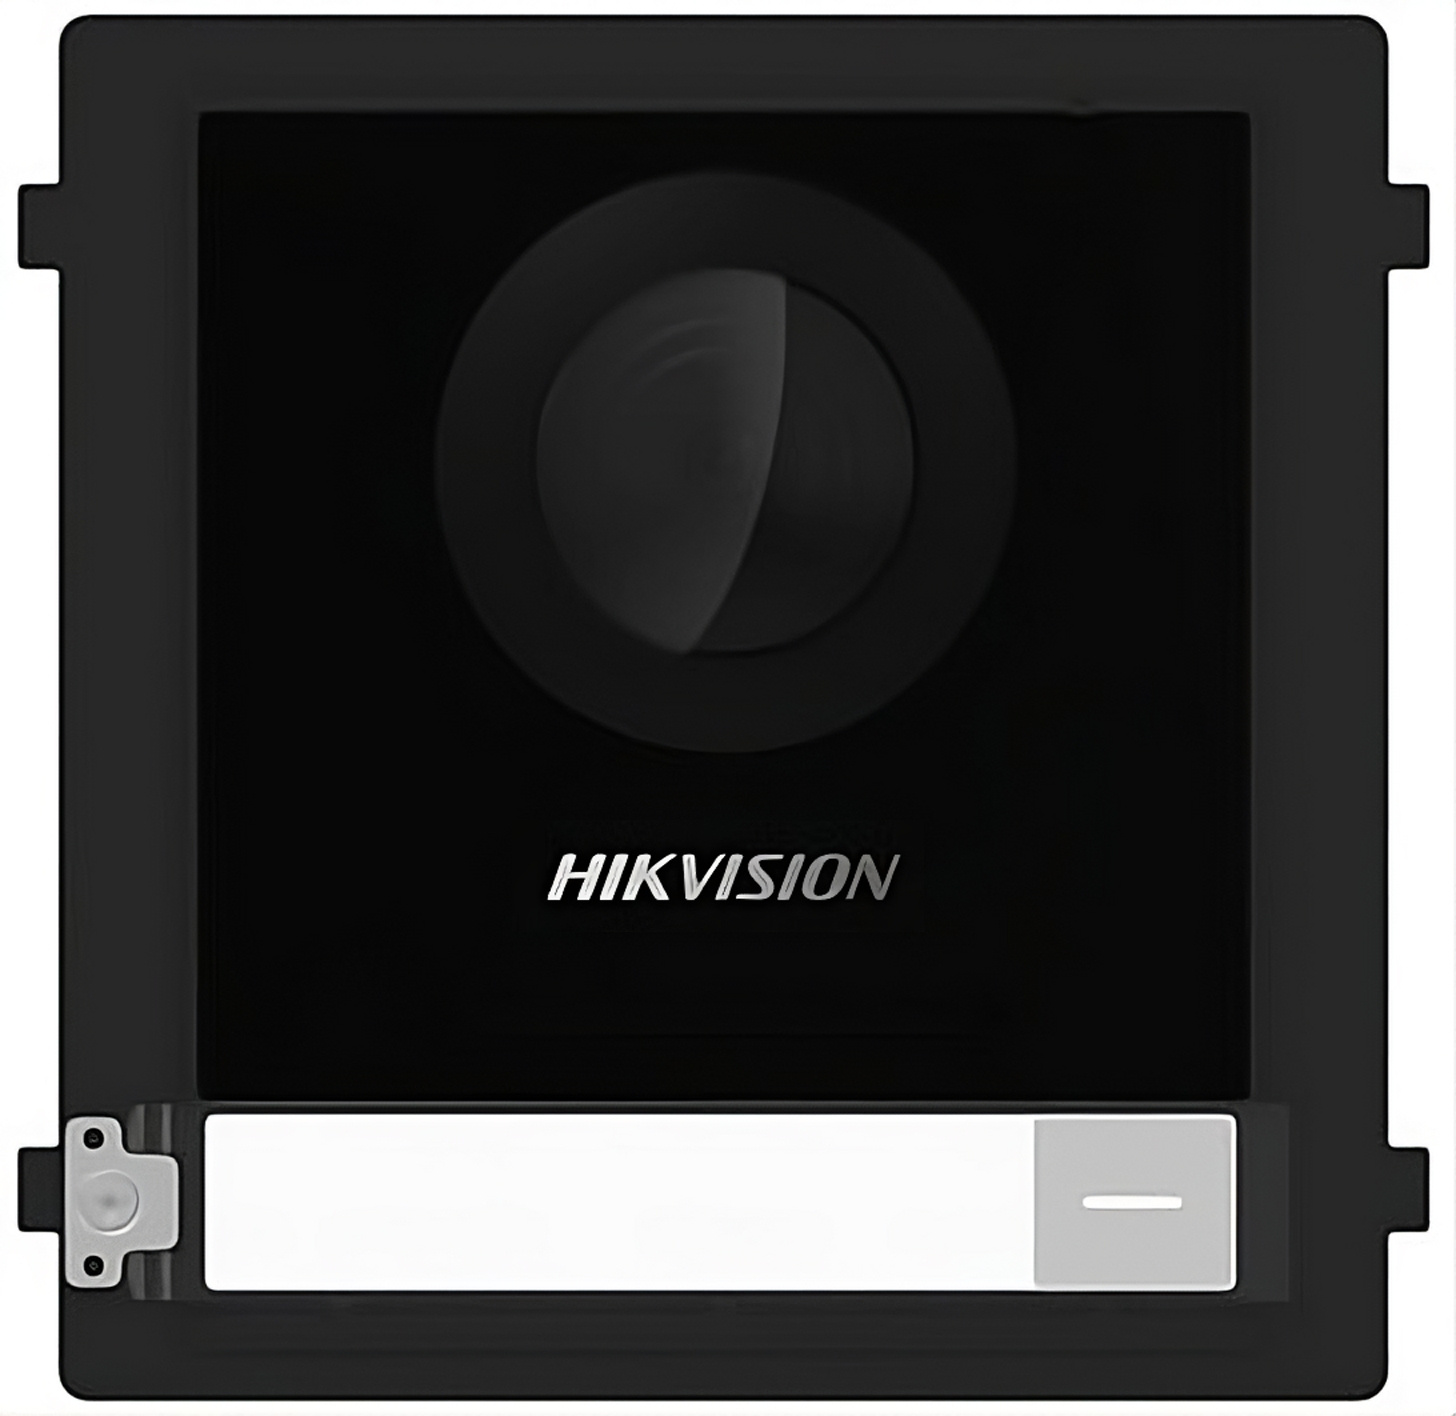 Видеопанель Hikvision DS-KD8003-IME1(B) цвет панели: черный